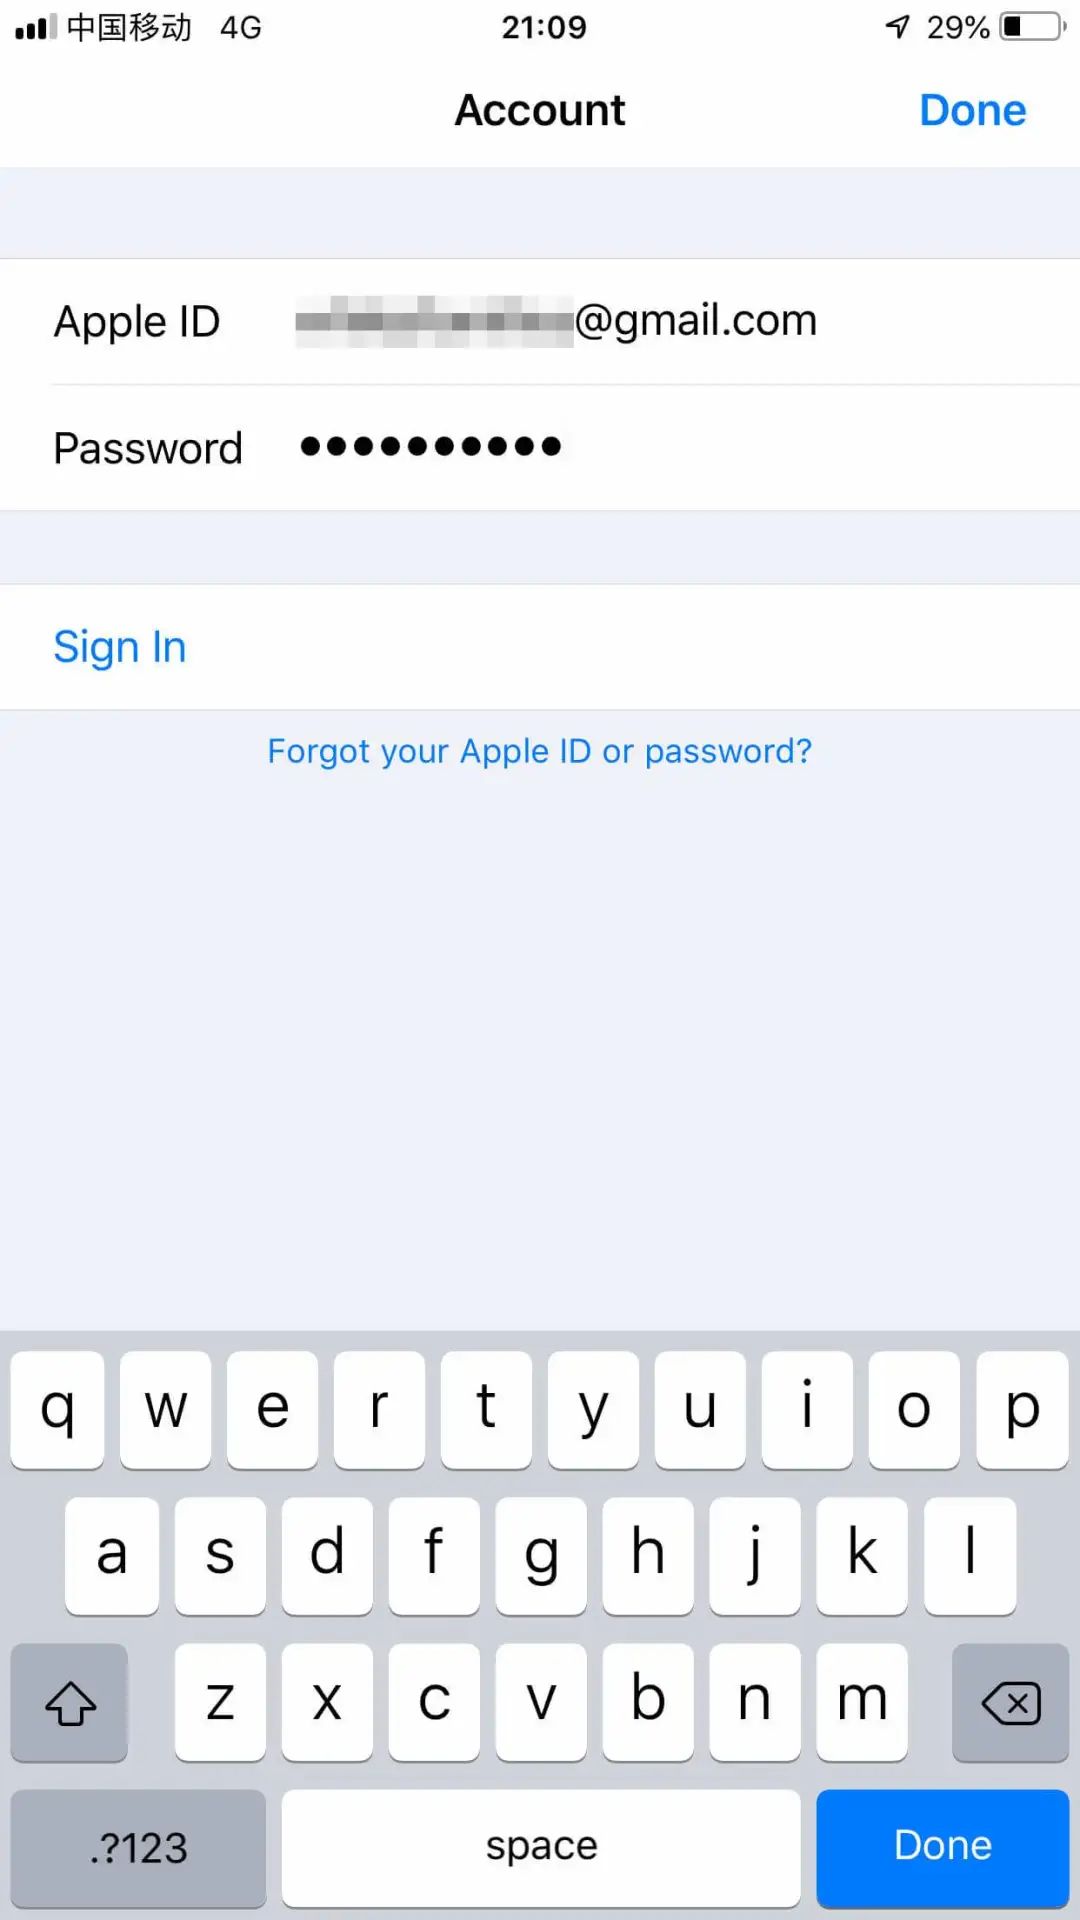 小白也可以，手把手教你美区 Apple ID绑定使用美区 PayPal 付款